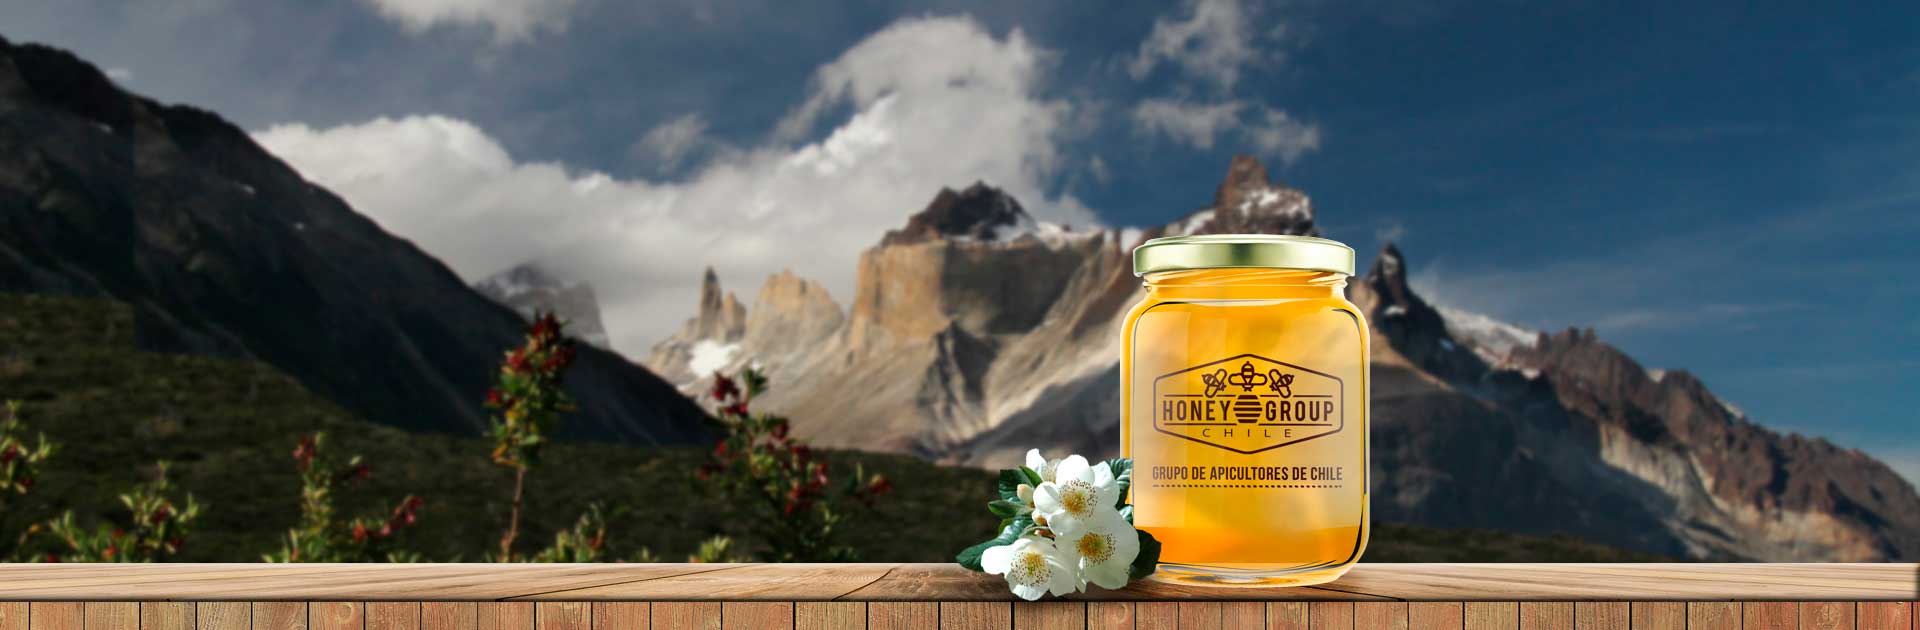 honey group chile grupo de apicultores chilenos